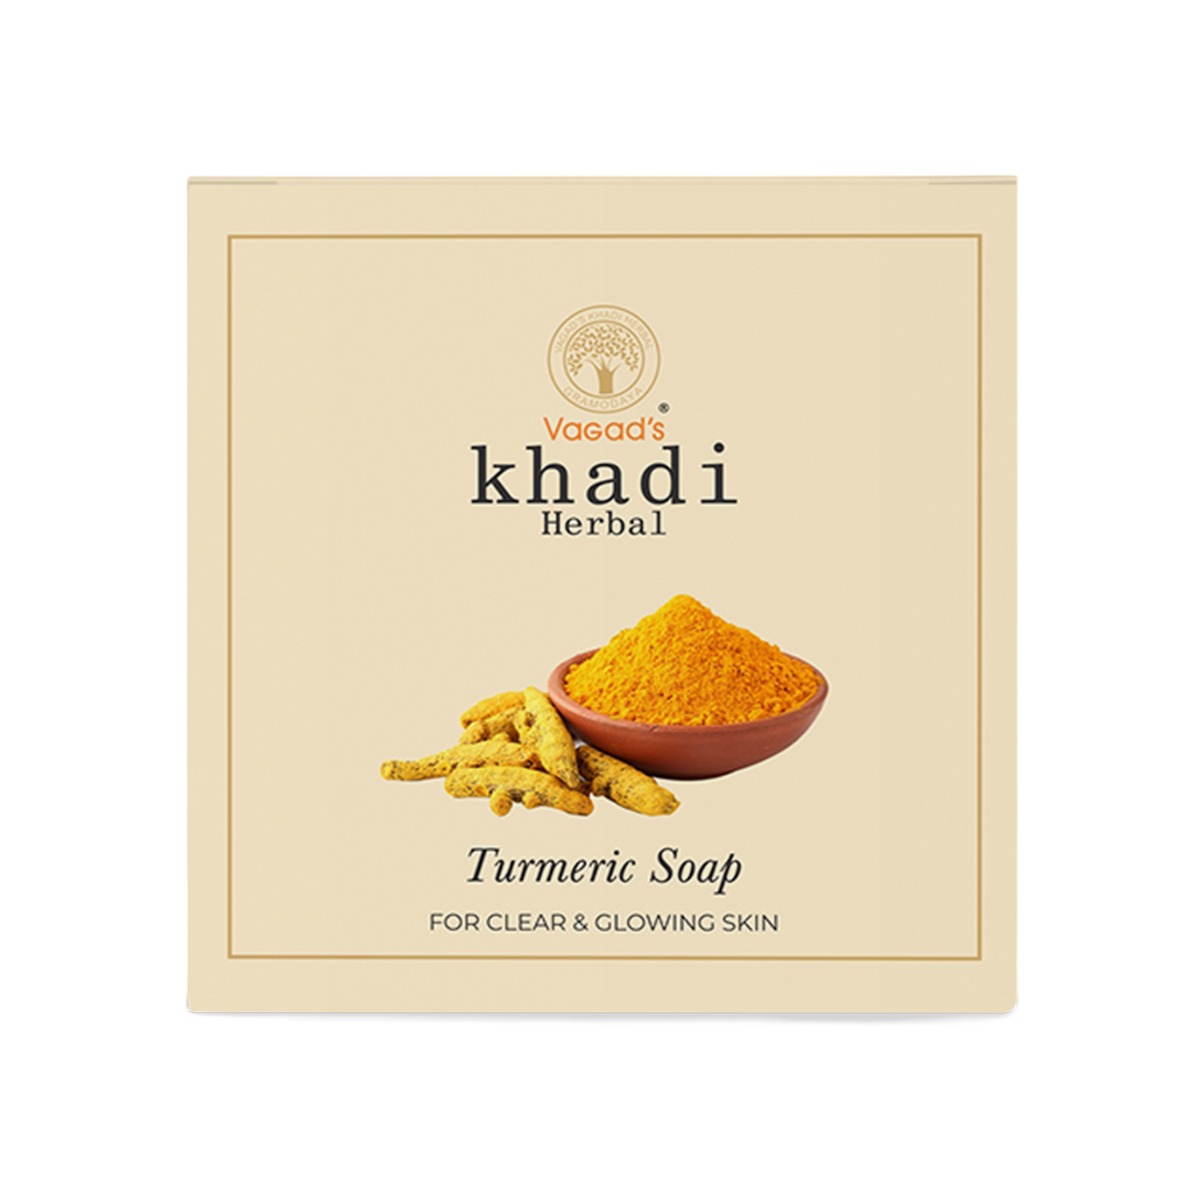 Vagad's Khadi Turmeric Soap, 100gm